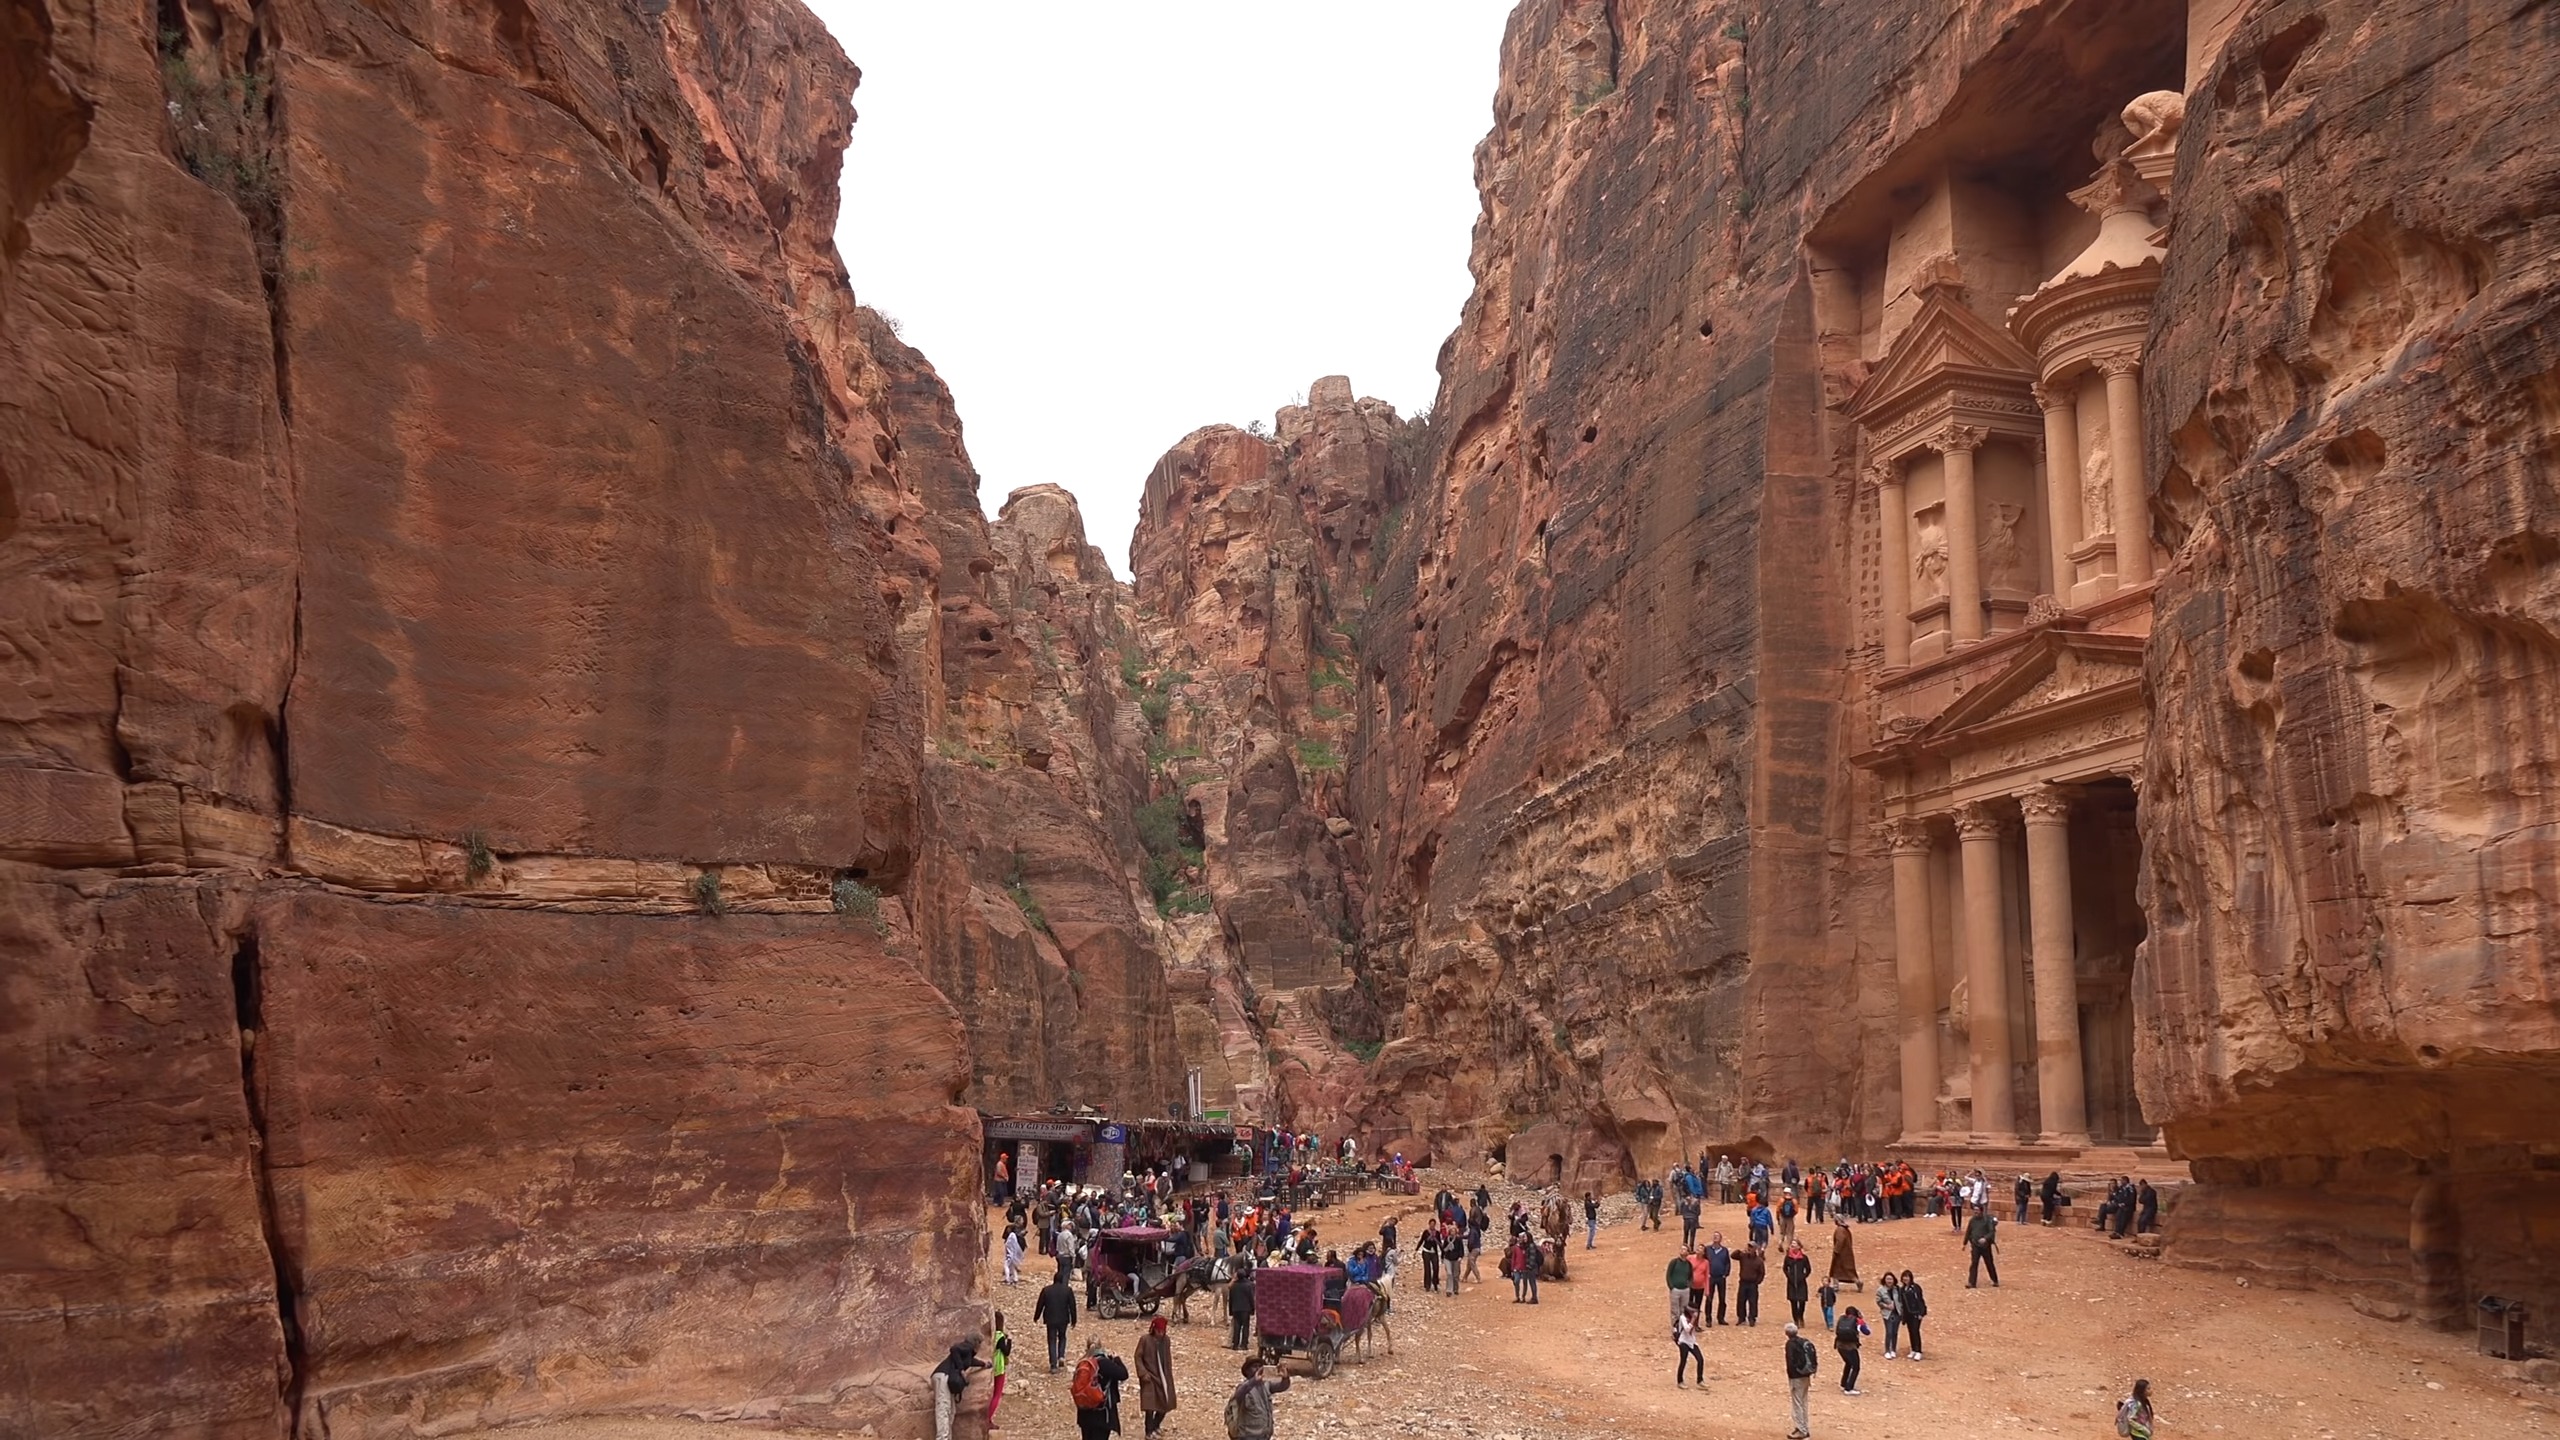 Petra, Jordan - Tourism